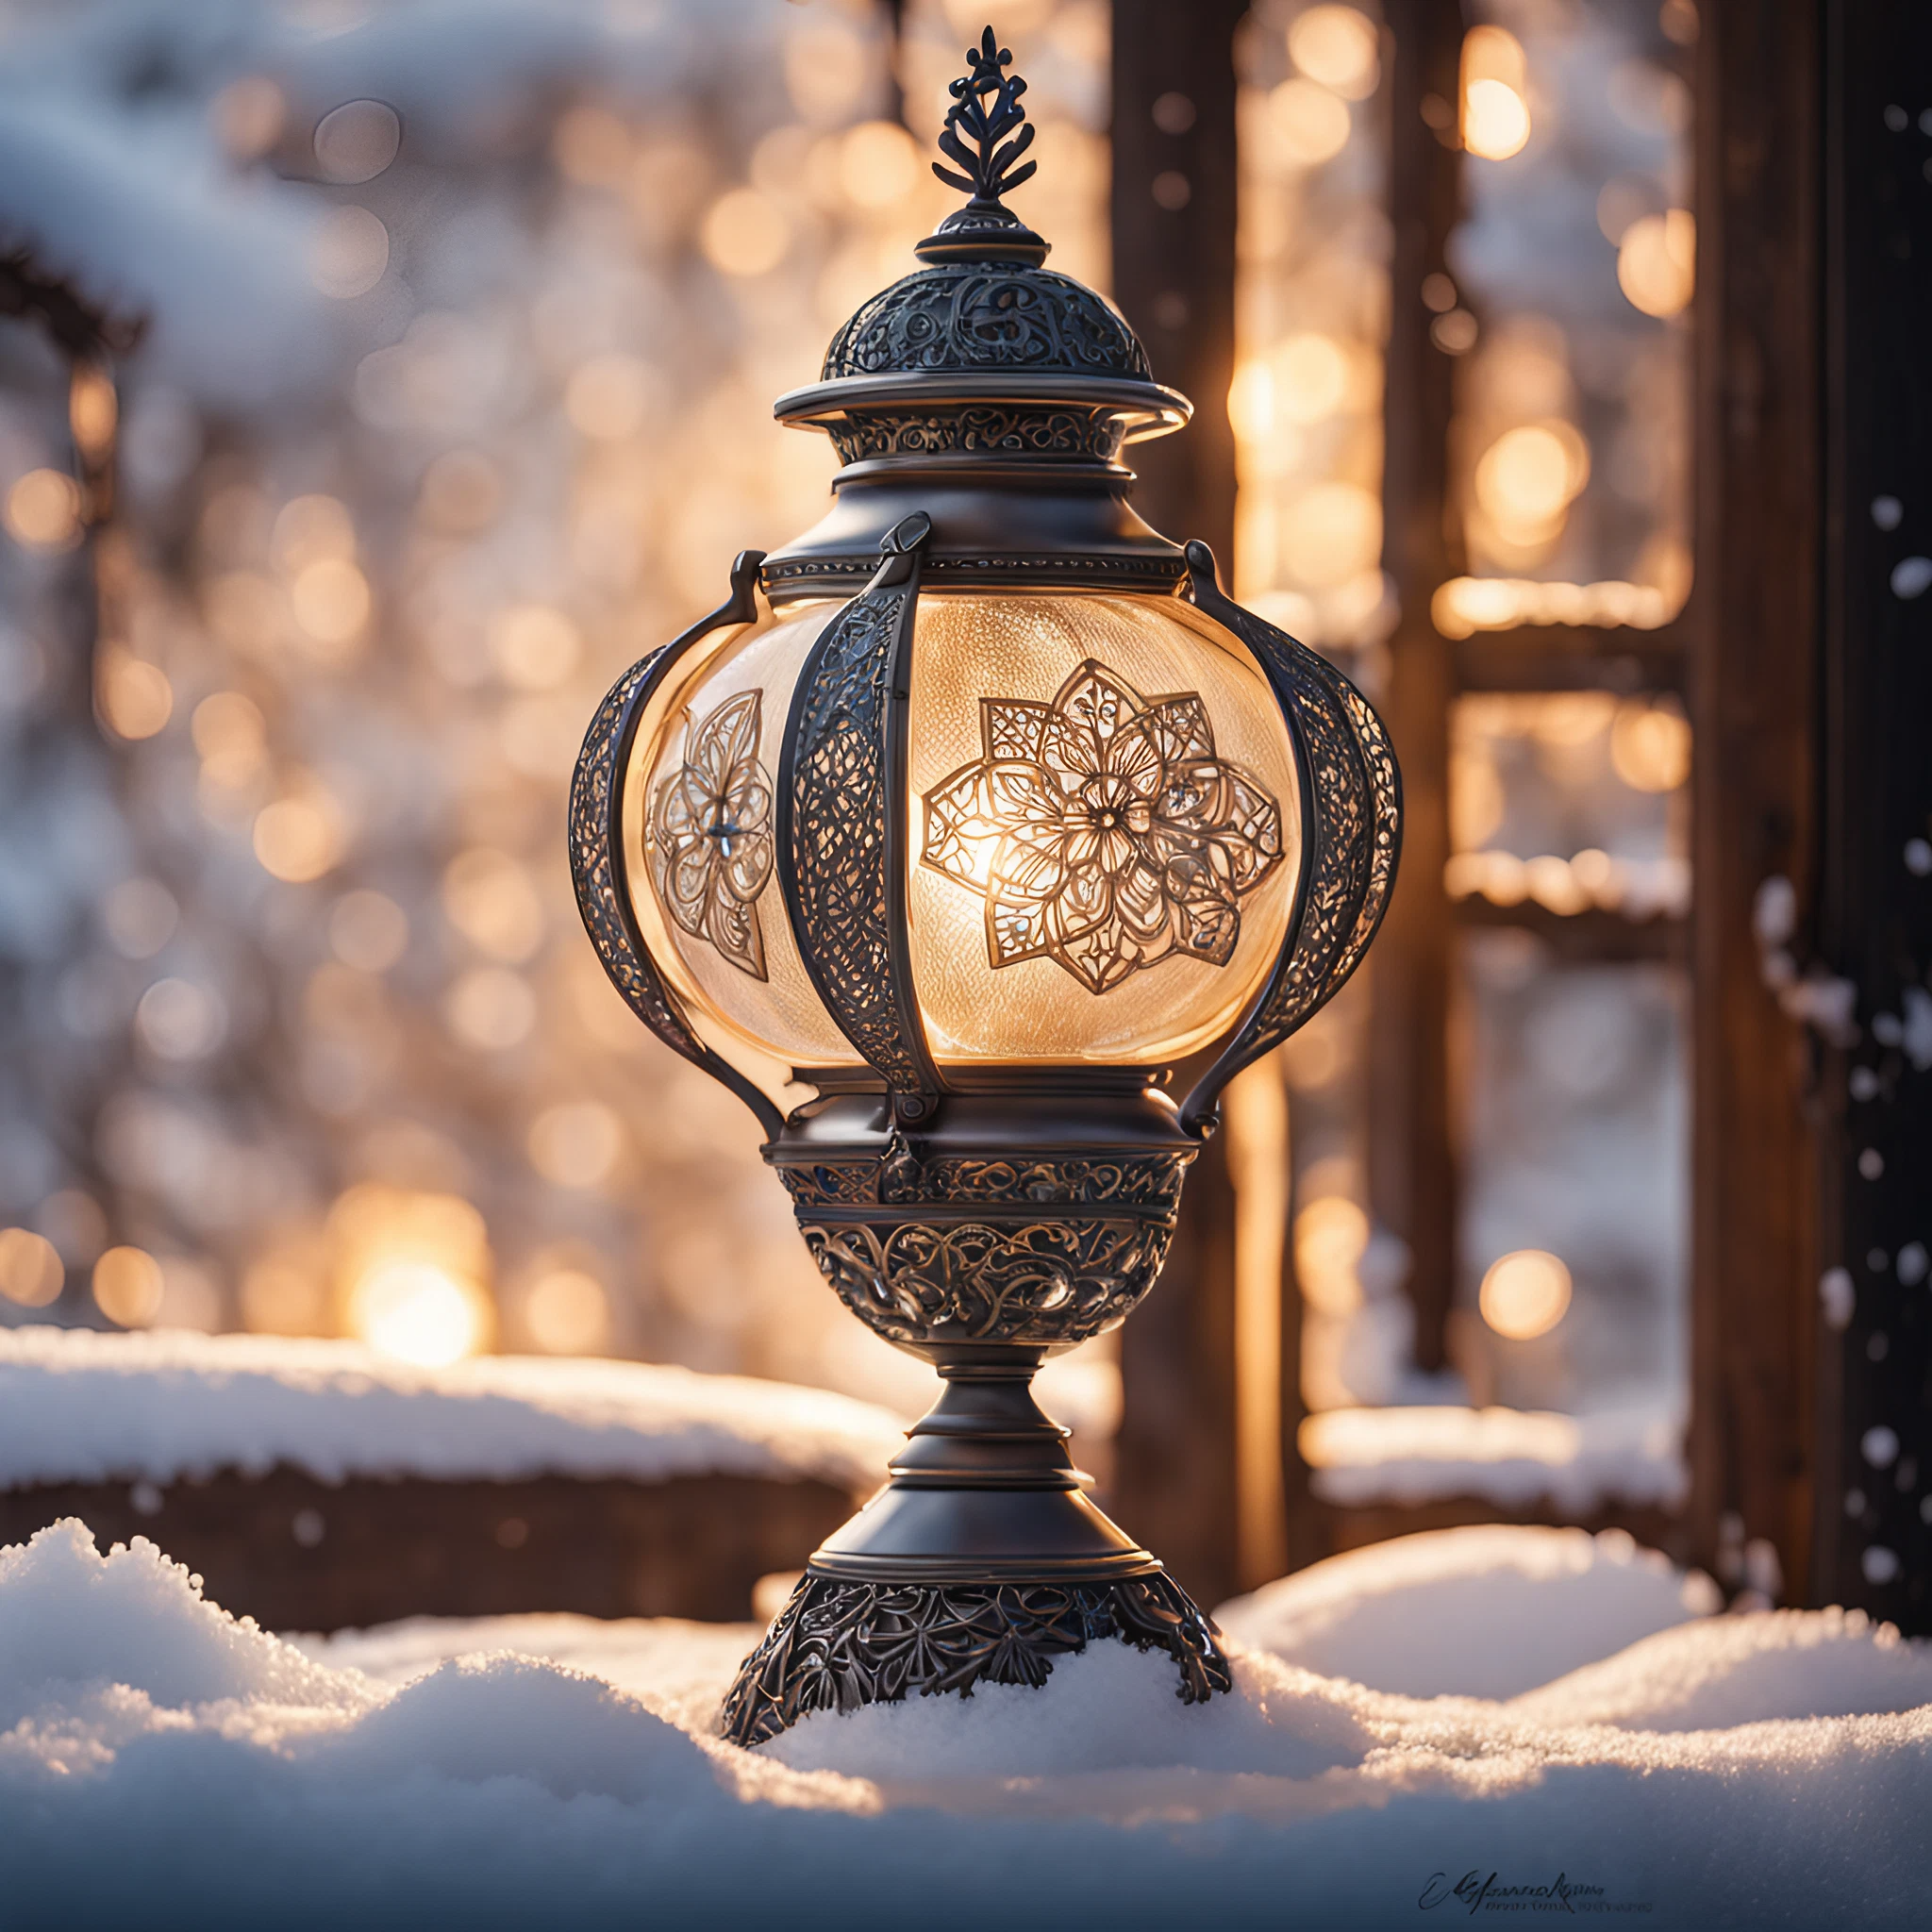 雪降る窓辺の美しいランプ＆ファンタジー風の古家の無料写真画像素材